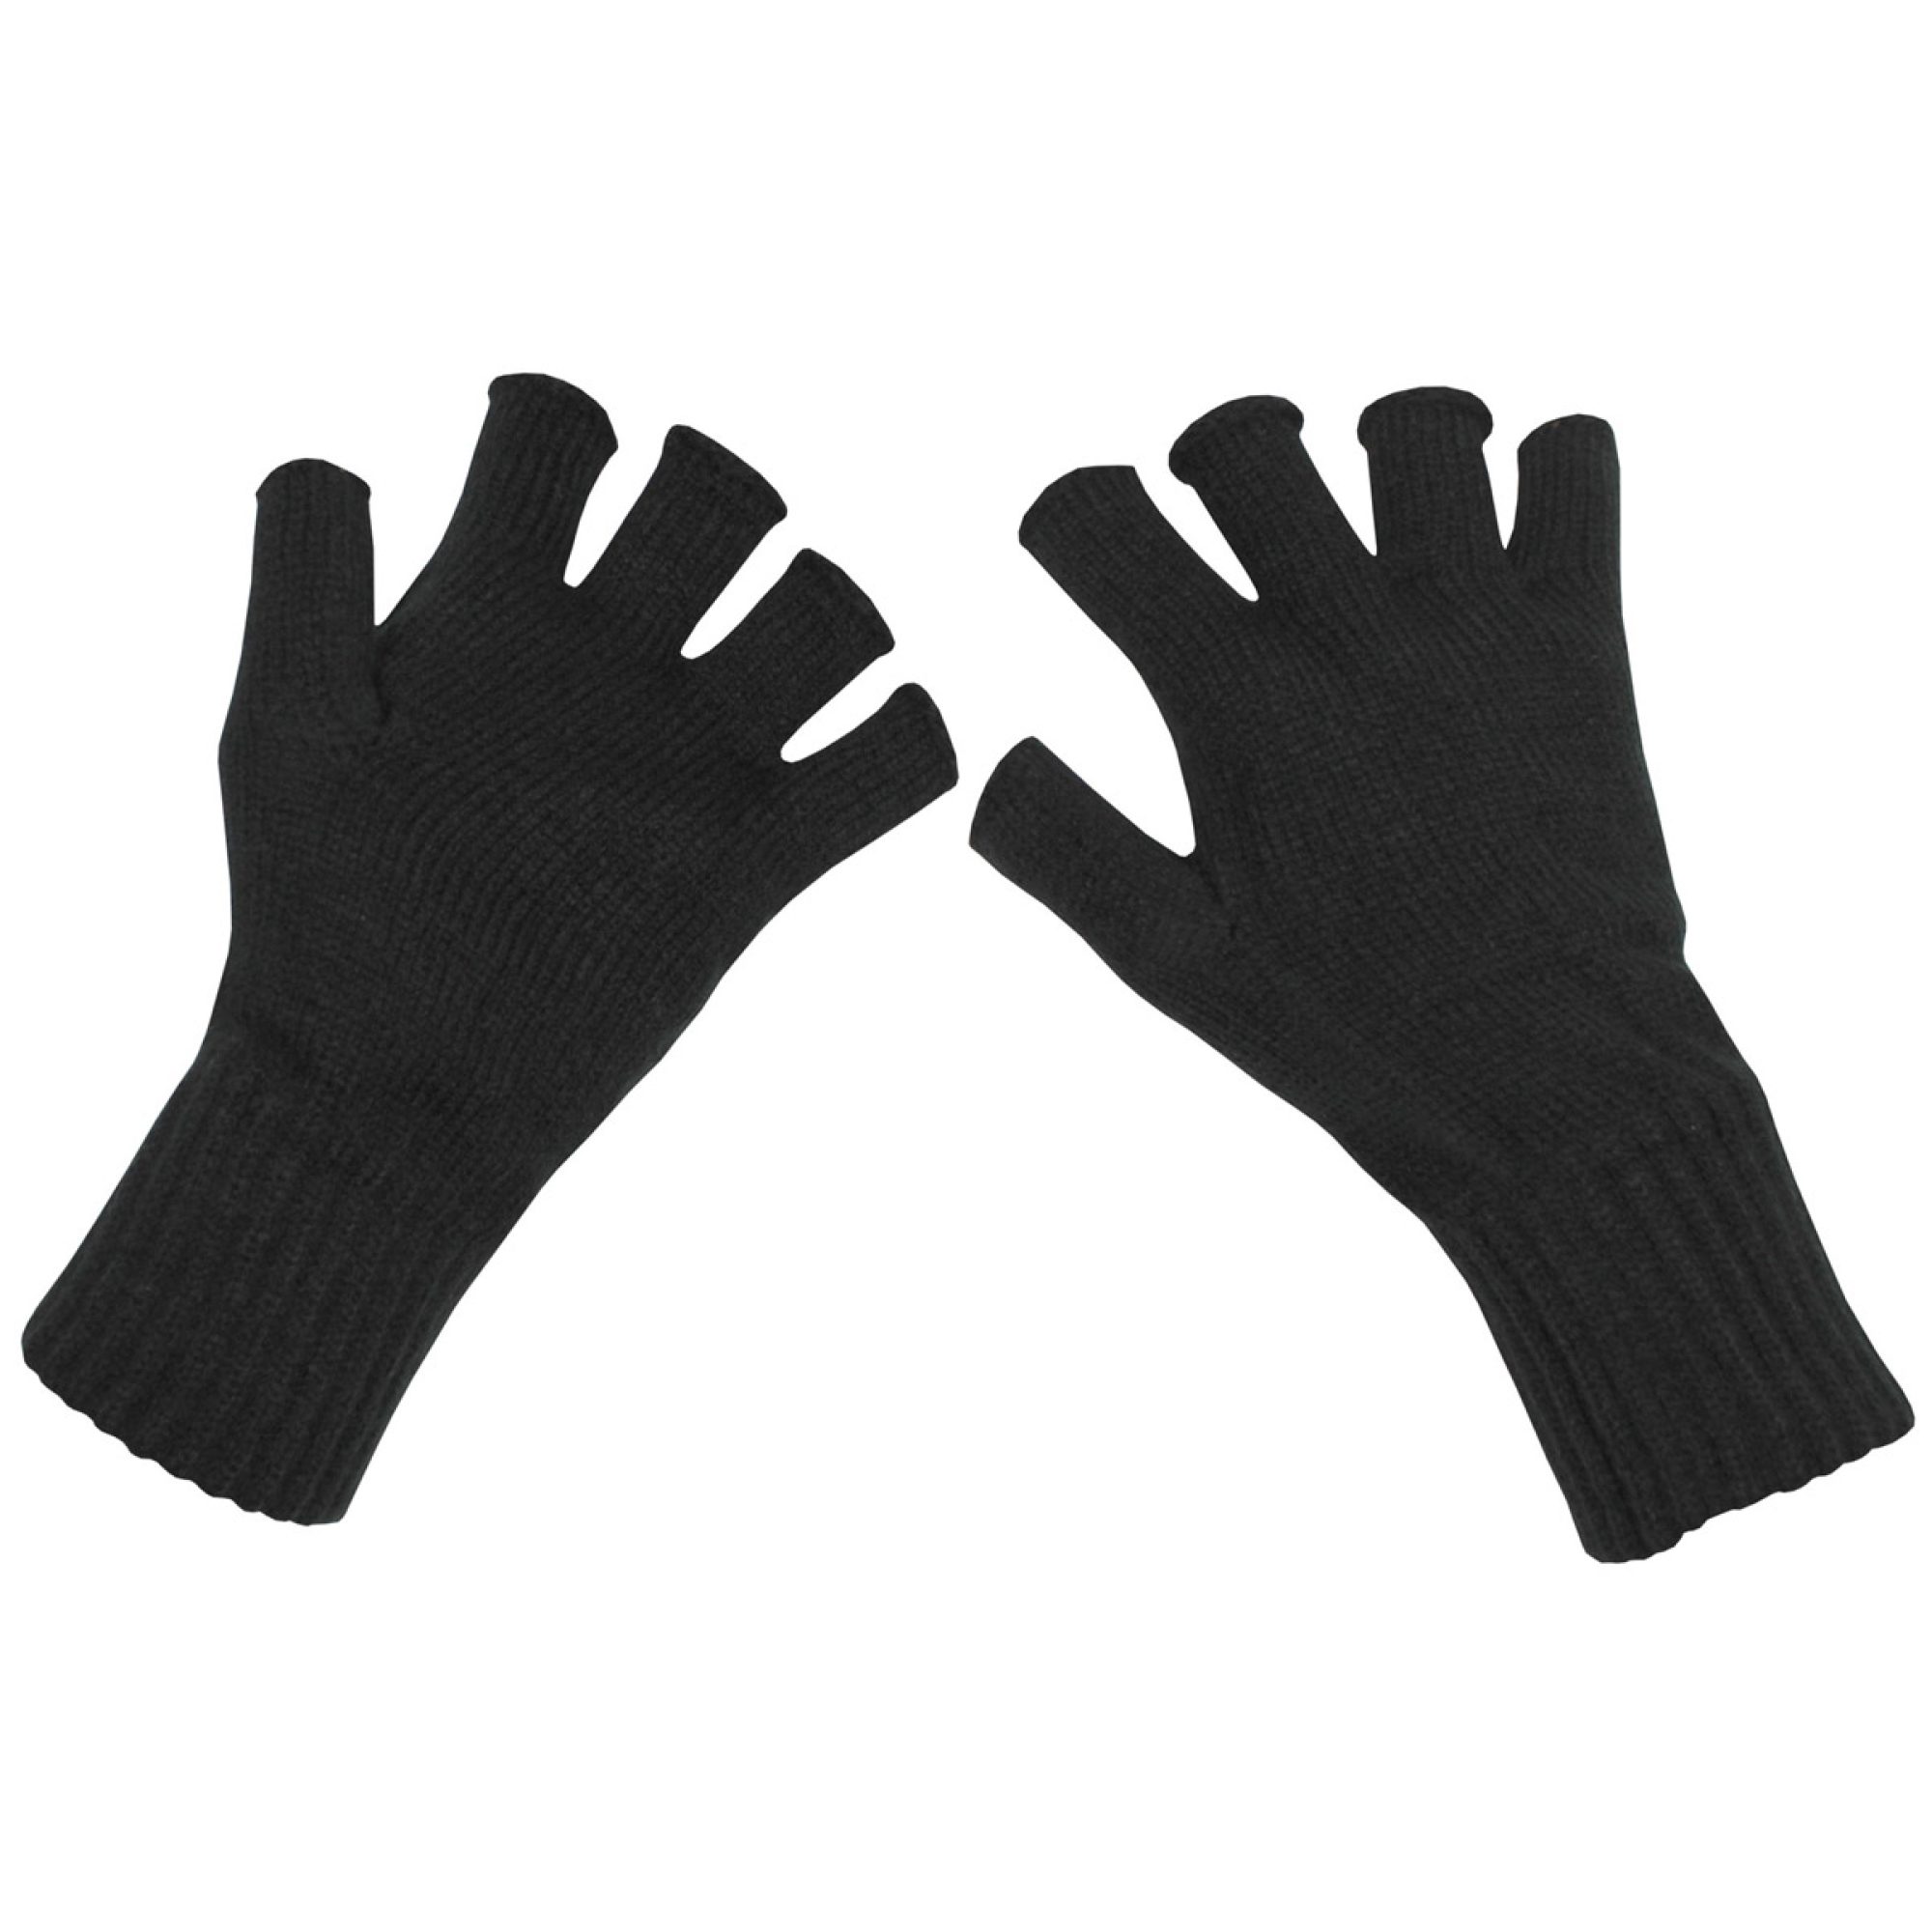 Strick-Handschuhe,  schwarz, ohne Finger